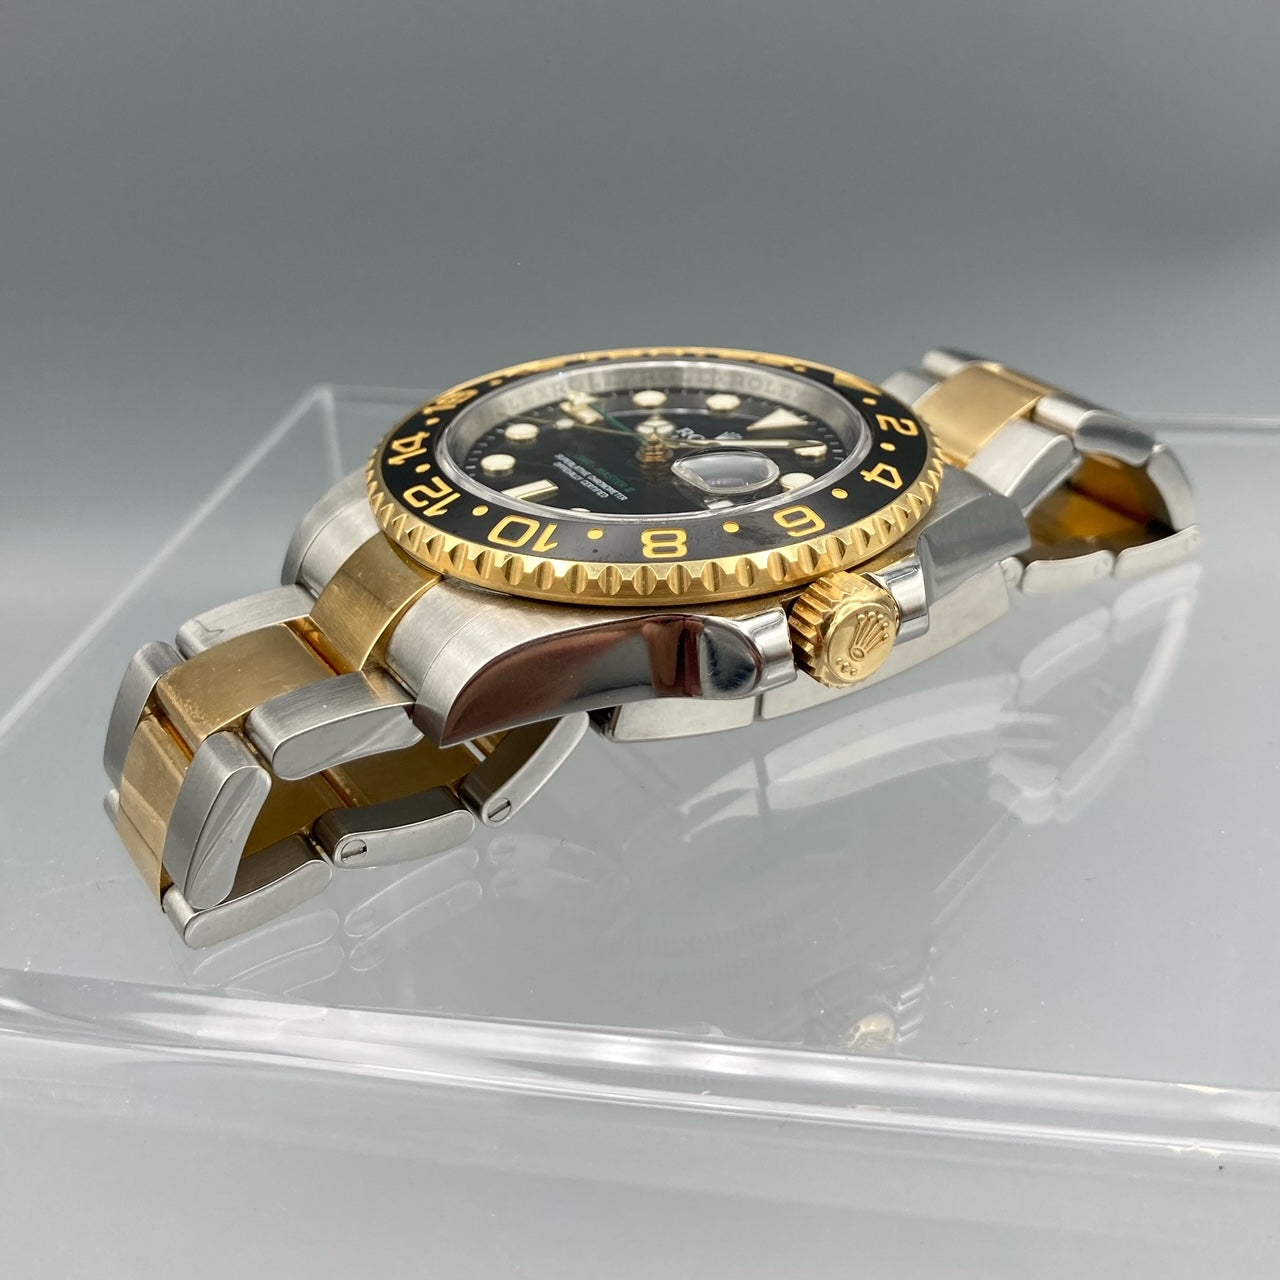 Rolex GMT-Master II Men's Black Watch - 116713